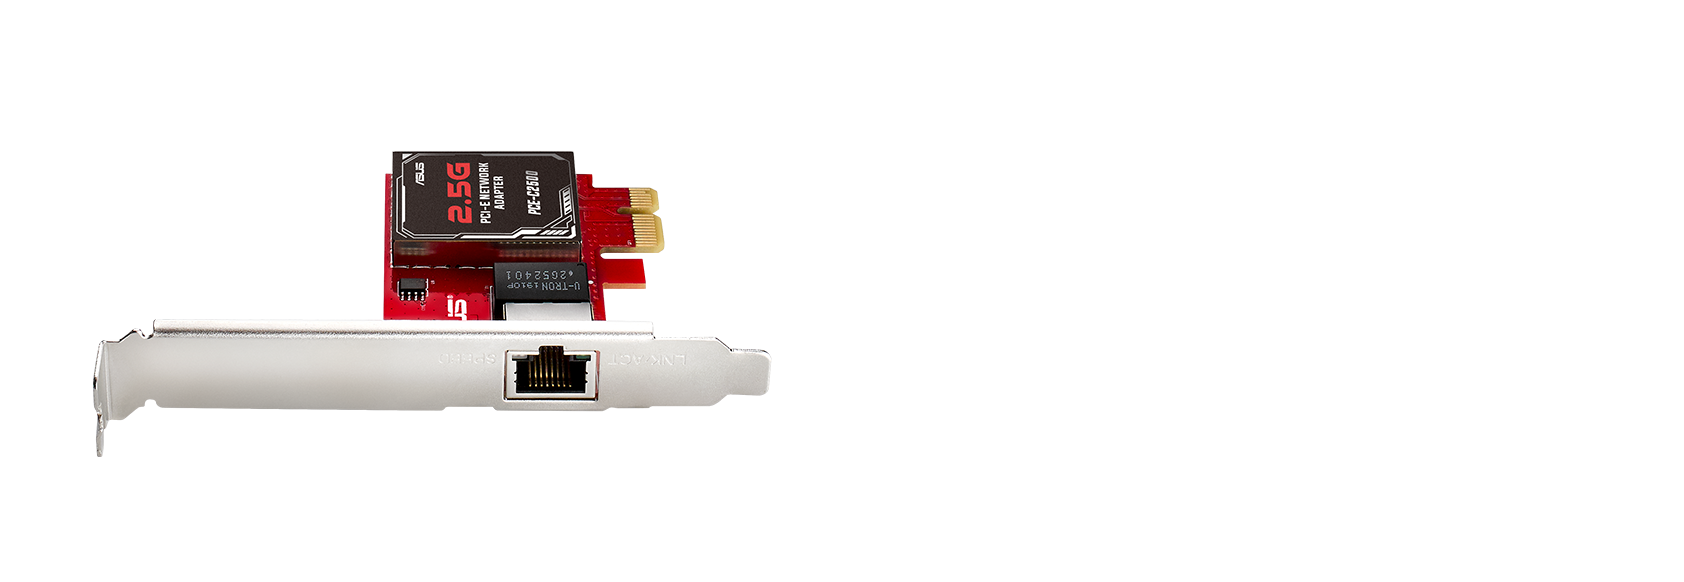 O ASUS PCE-C2500 inclui uma porta LAN RJ45 standard com capacidade de rede de 2.5 Gbps